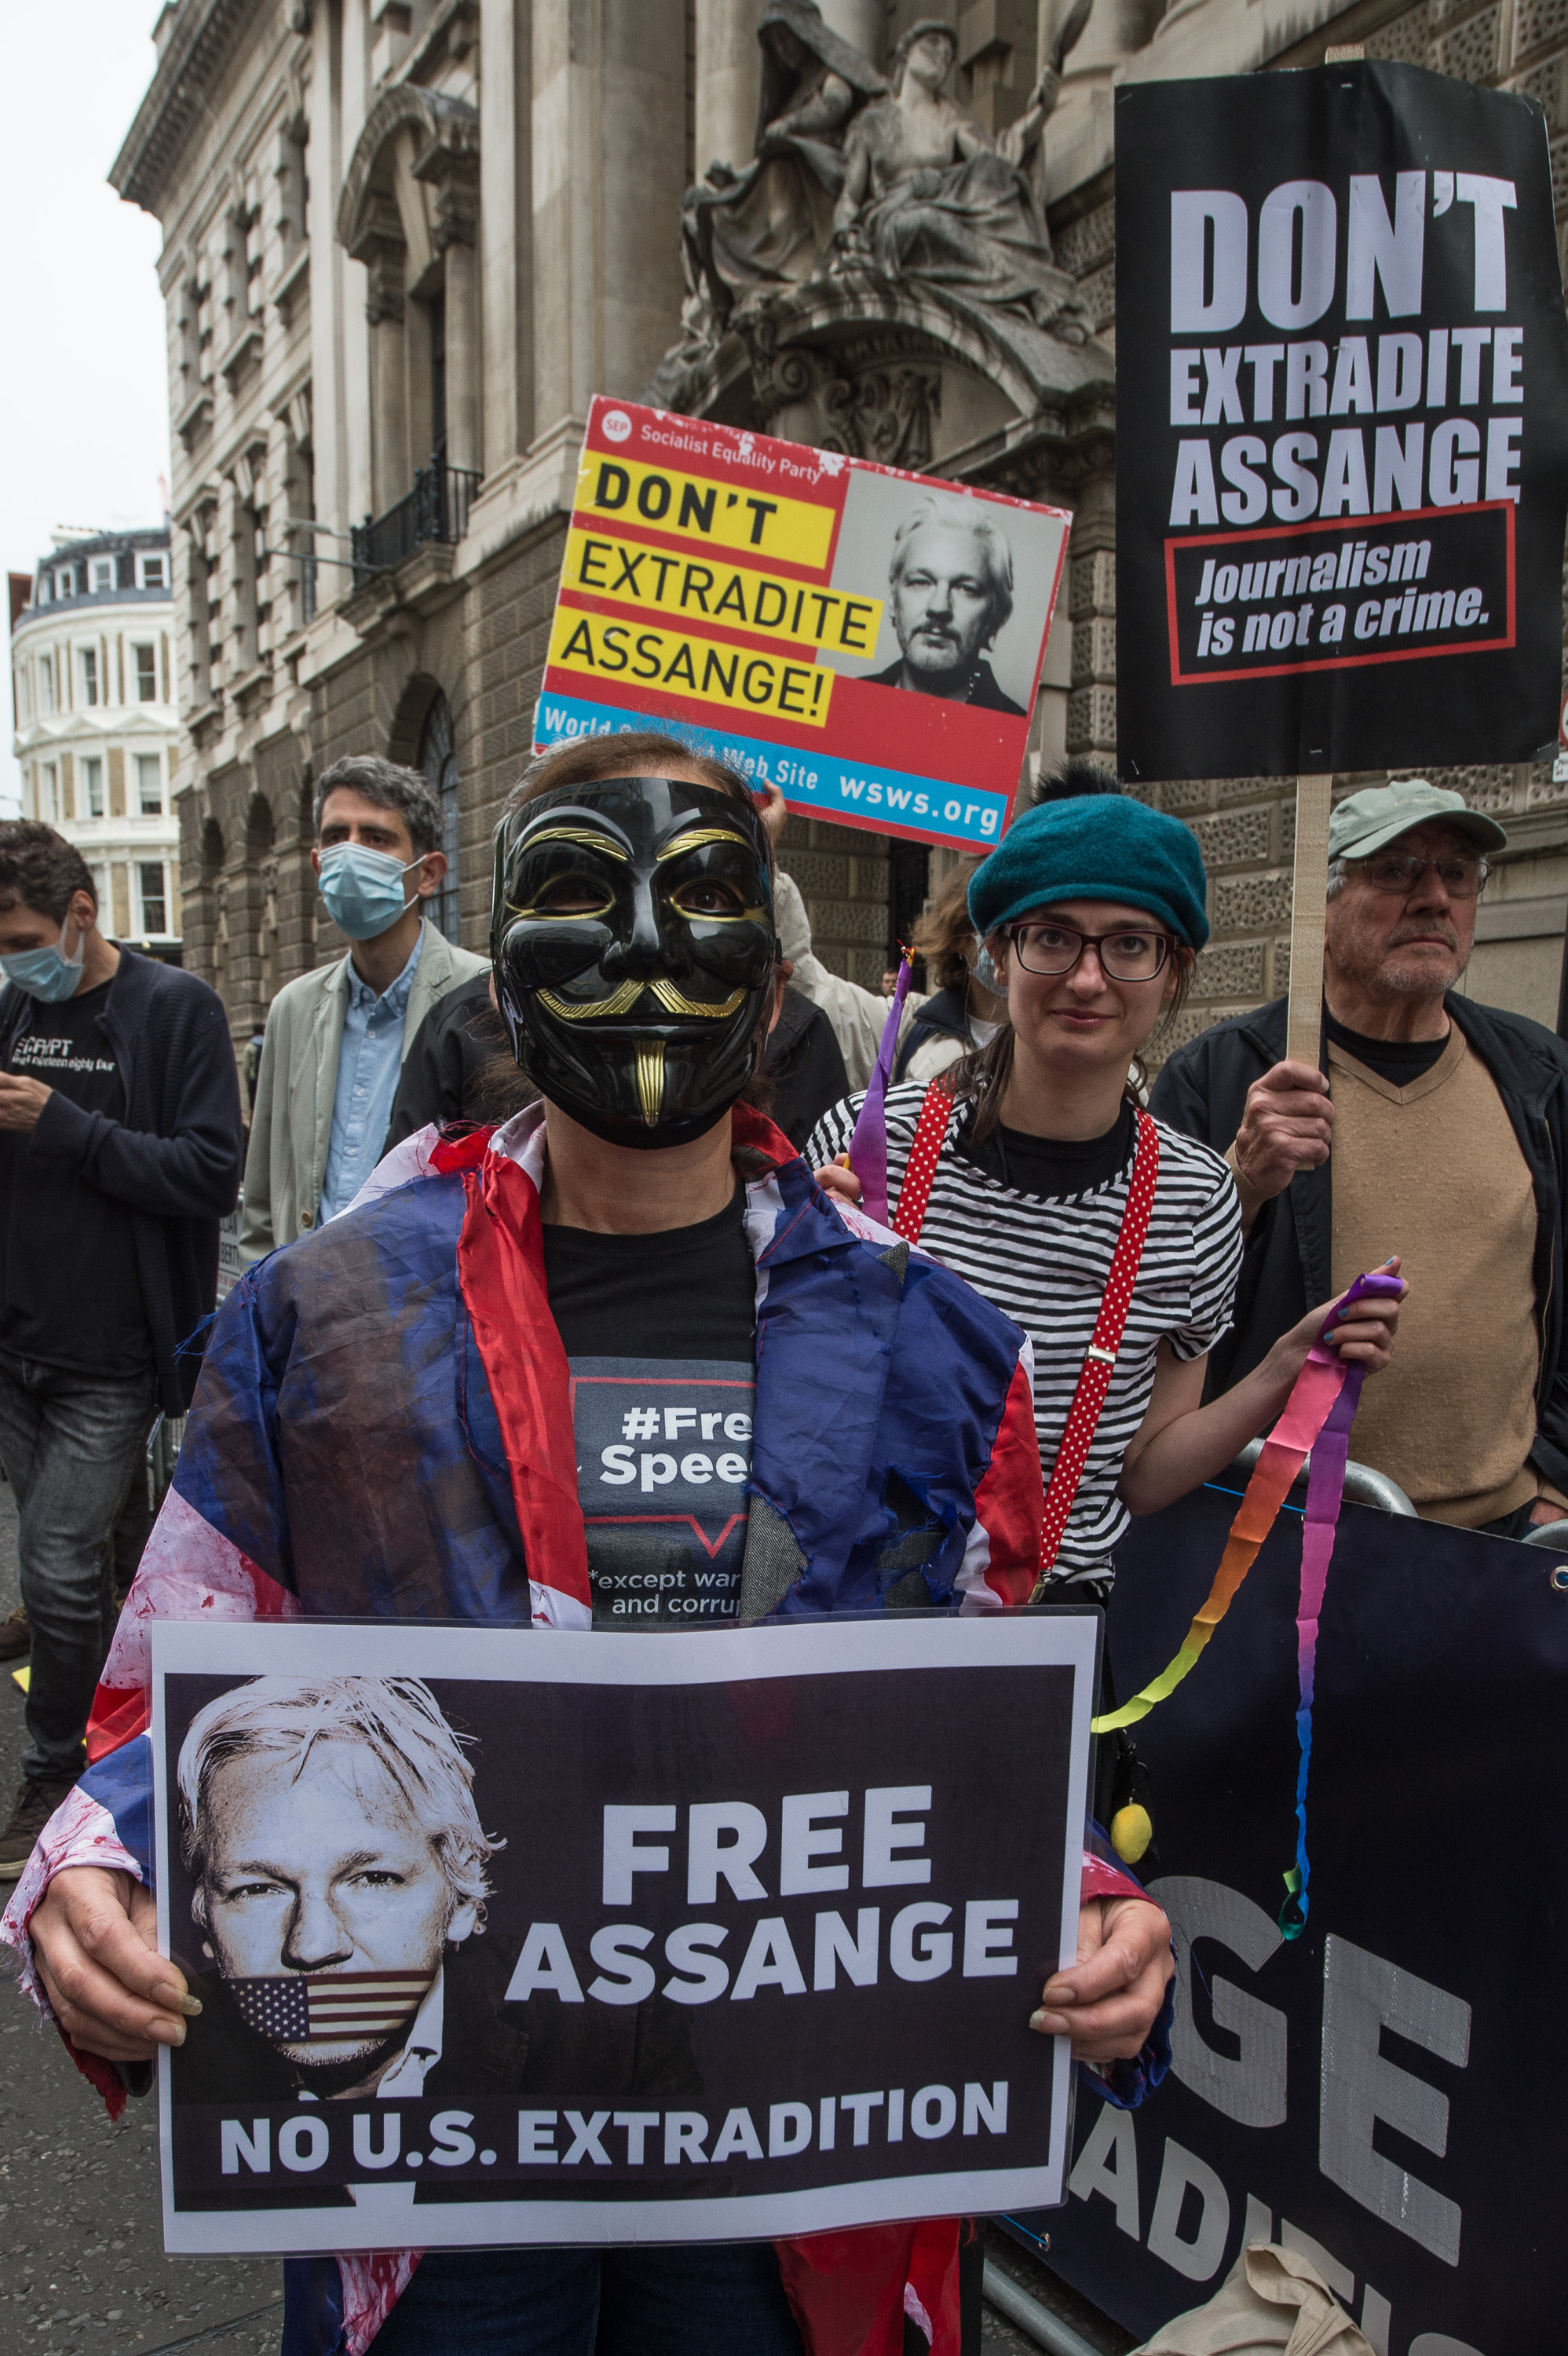 Assange Court Report September 23: Morning